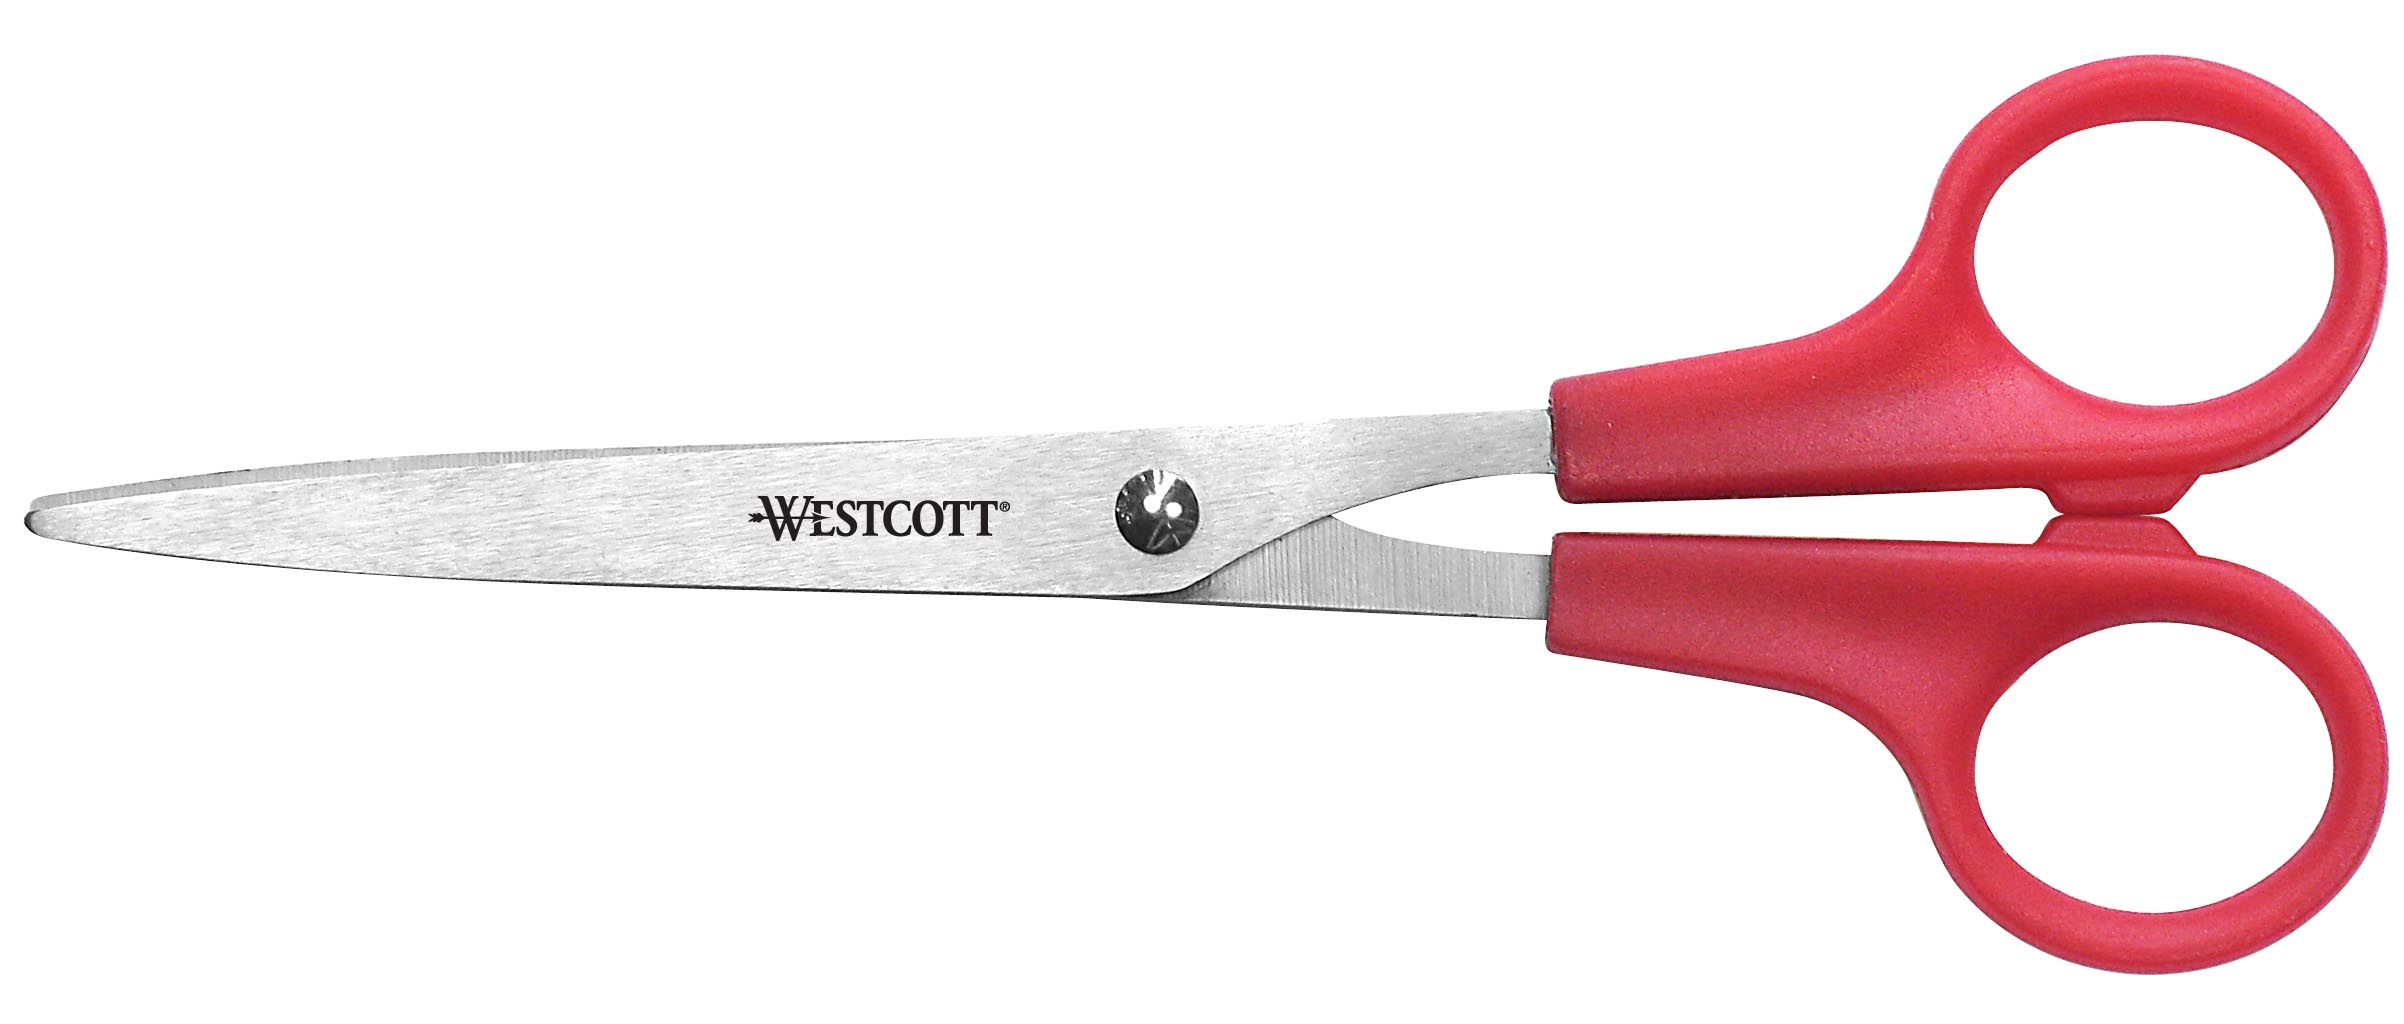 Westcott All Purpose Value Scissors, 7", Red (40617)